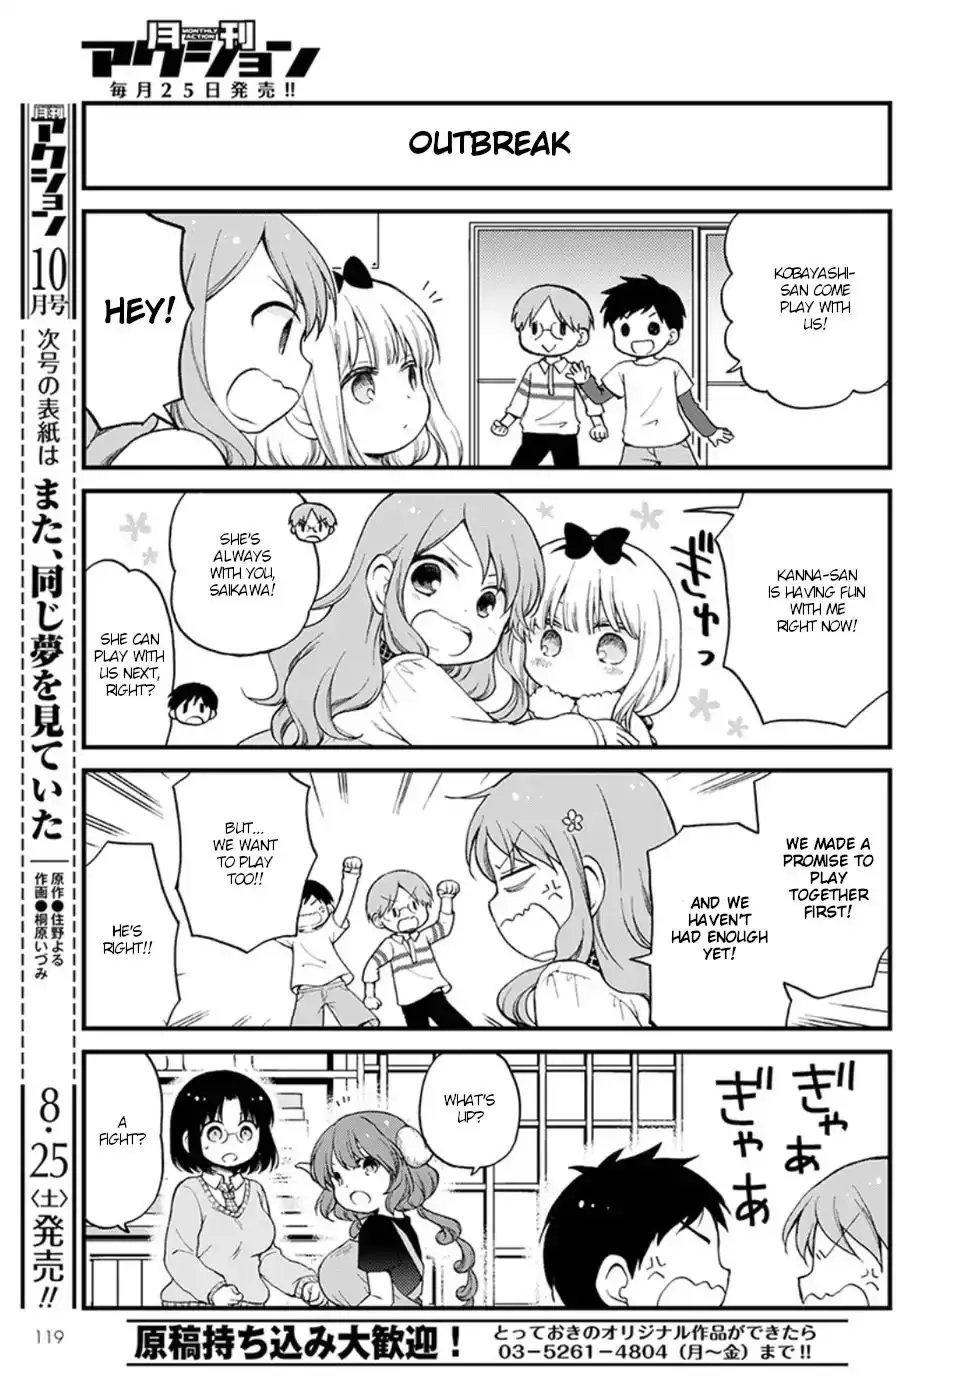 Kobayashi-San Chi No Maid Dragon: Elma Ol Nikki - 12 page 9